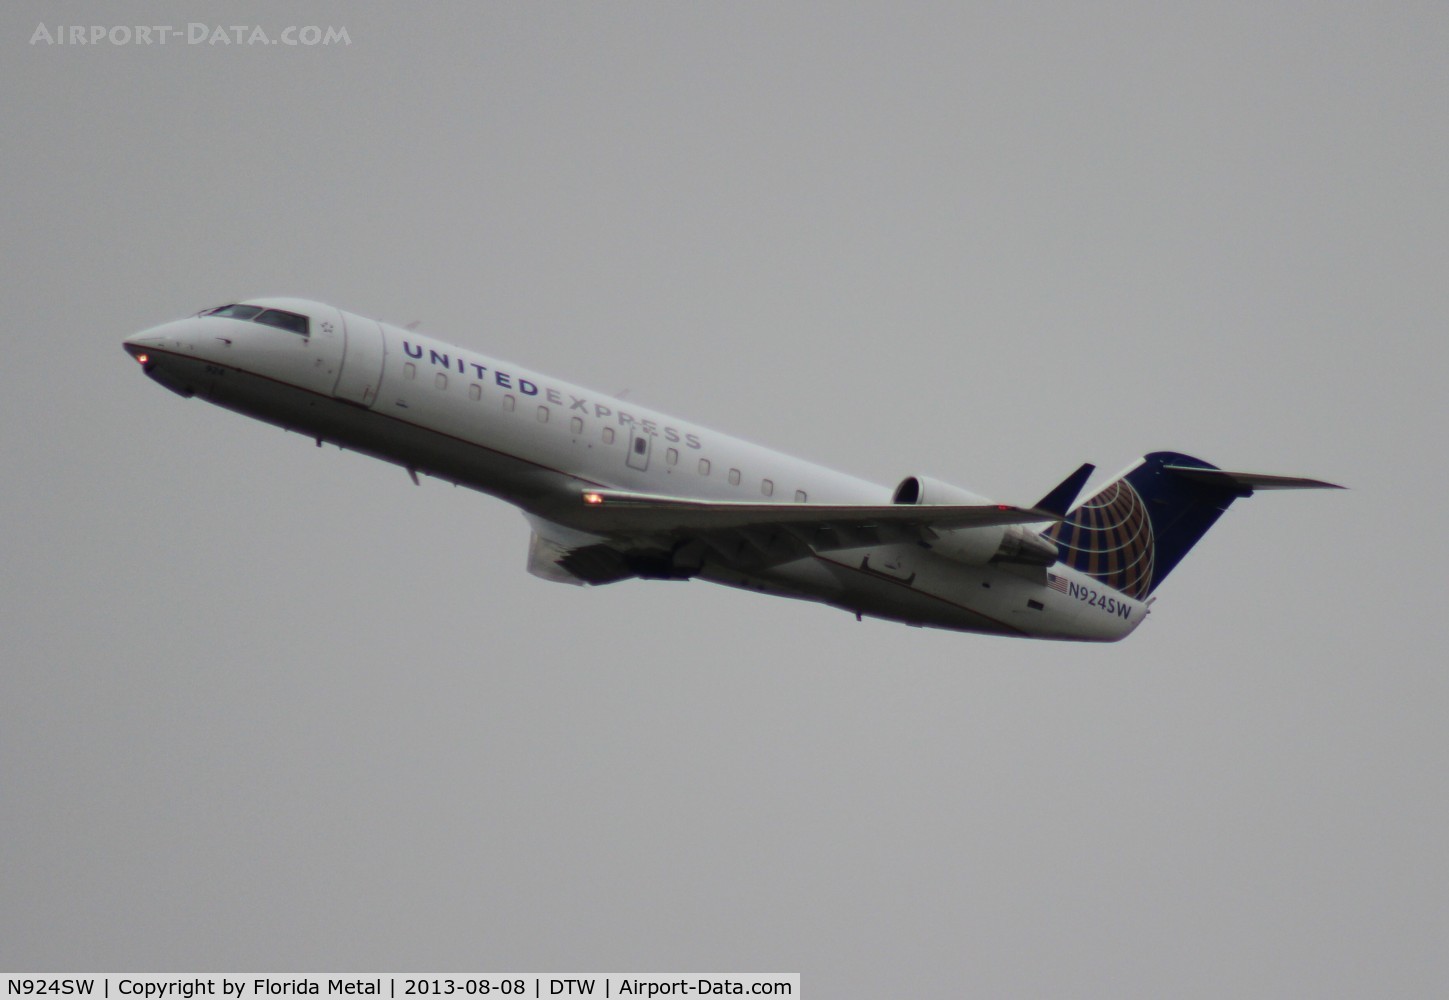 N924SW, 2002 Bombardier CRJ-200LR (CL-600-2B19) C/N 7681, United Express CRJ-200